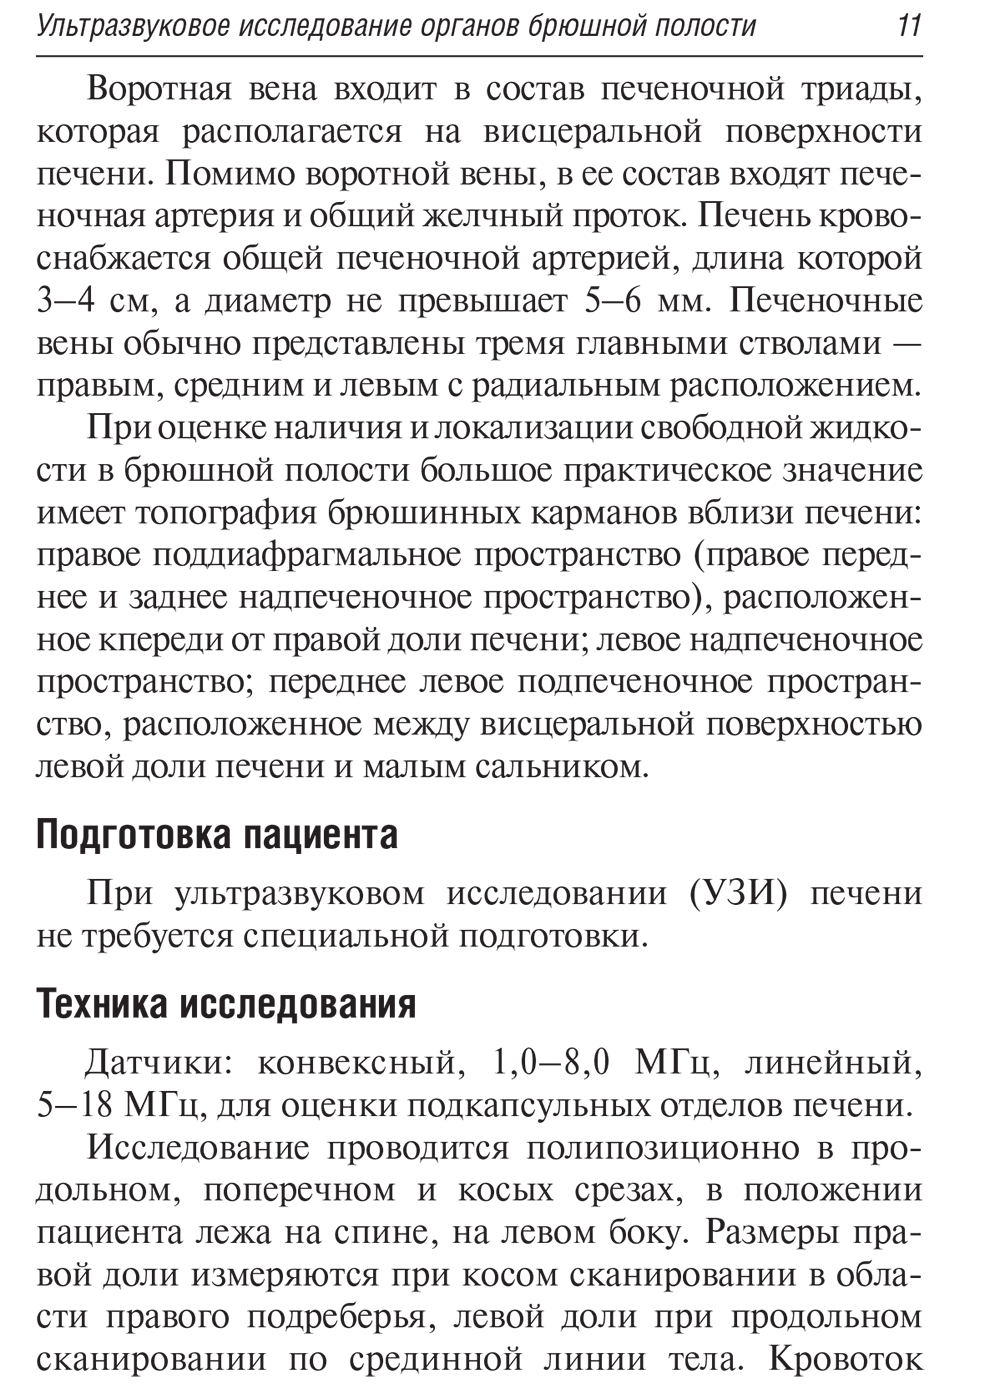 Пример страницы из книги "Ультразвуковая диагностика" - Терновой С. К., Маркина Н. Ю., Кислякова М. В.